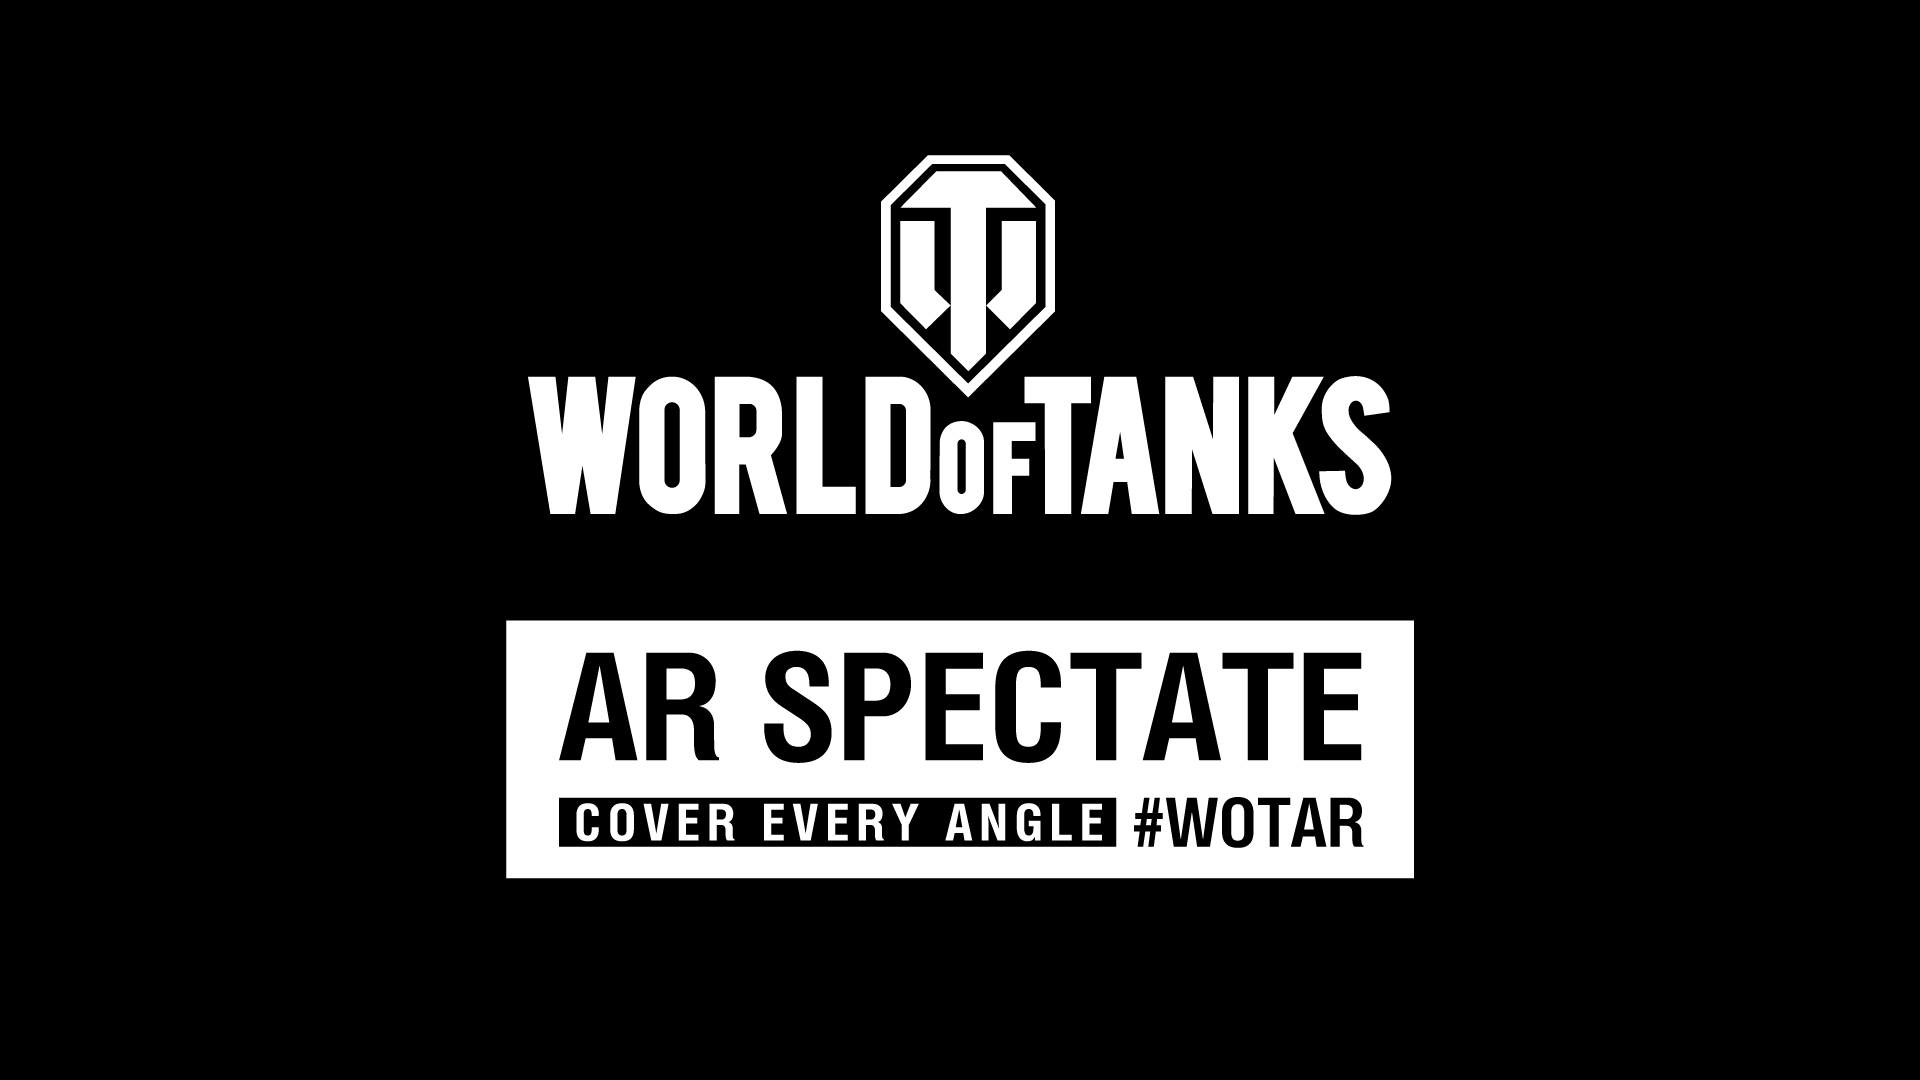 Gamescom 2018: AR Spectate – World of Tanks come non lo avete mai visto